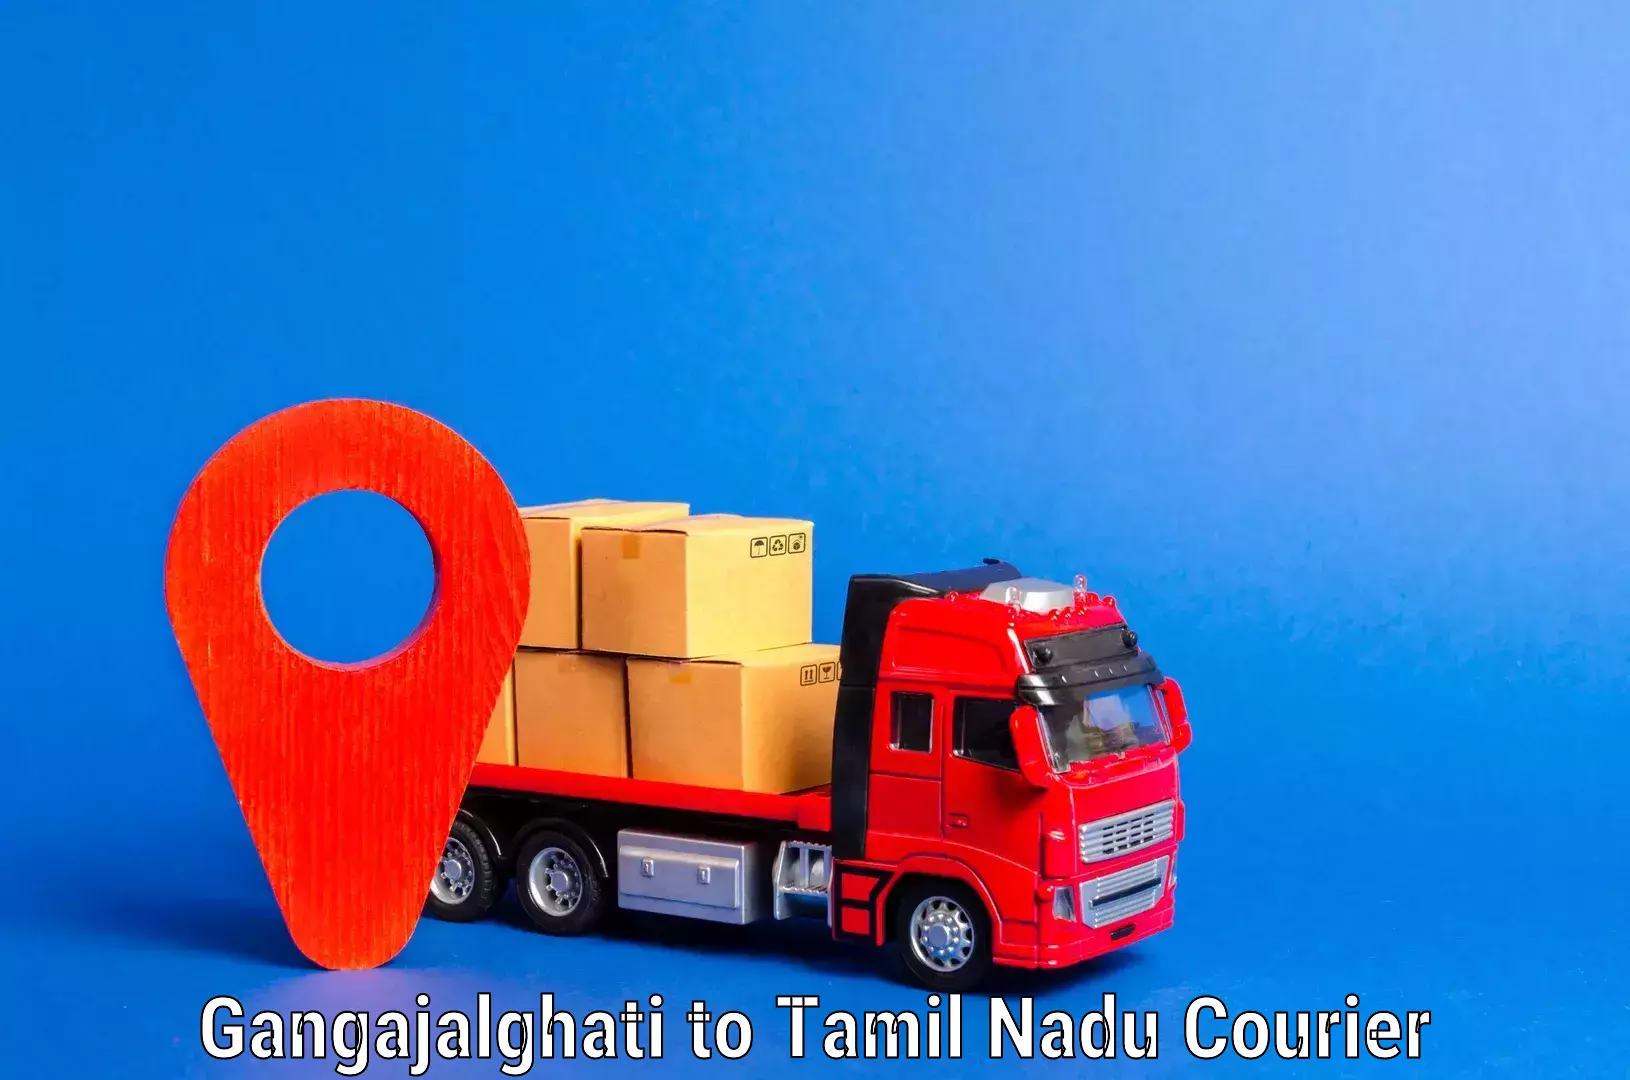 Professional movers Gangajalghati to Tamil Nadu